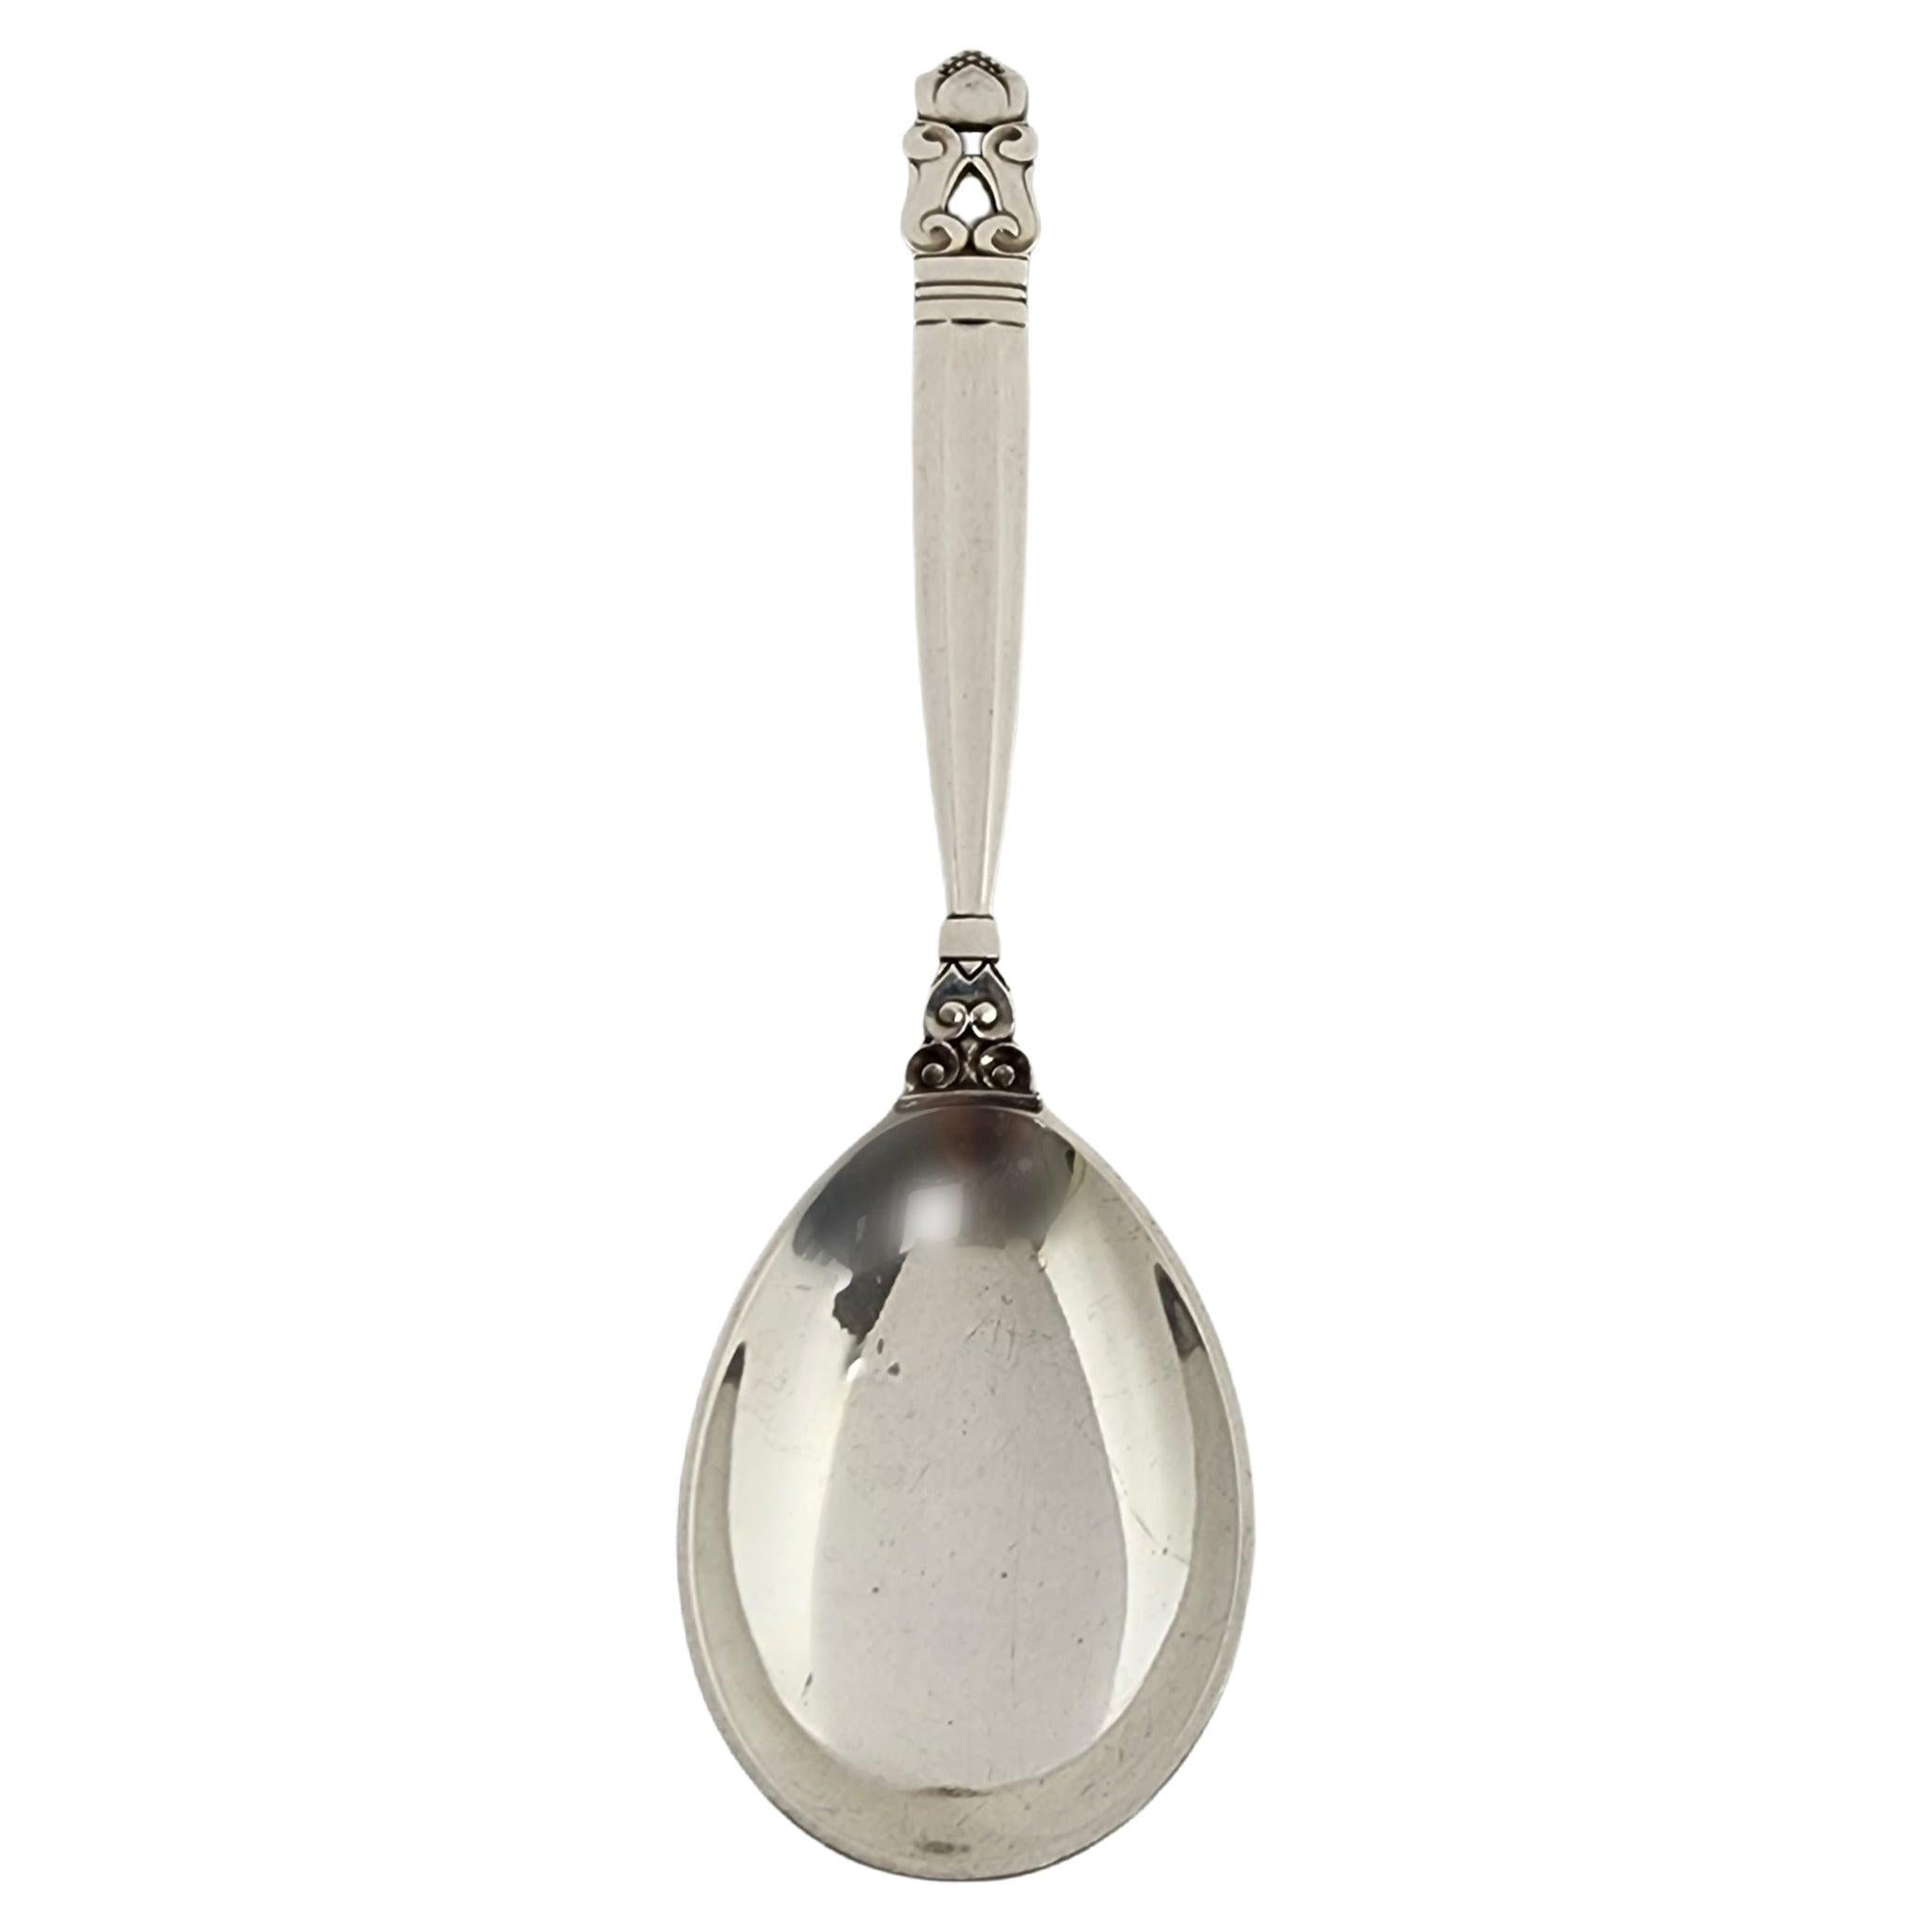 Georg Jensen Denmark Acorn Sterling Silver Jam Spoon 5 7/8" #15288